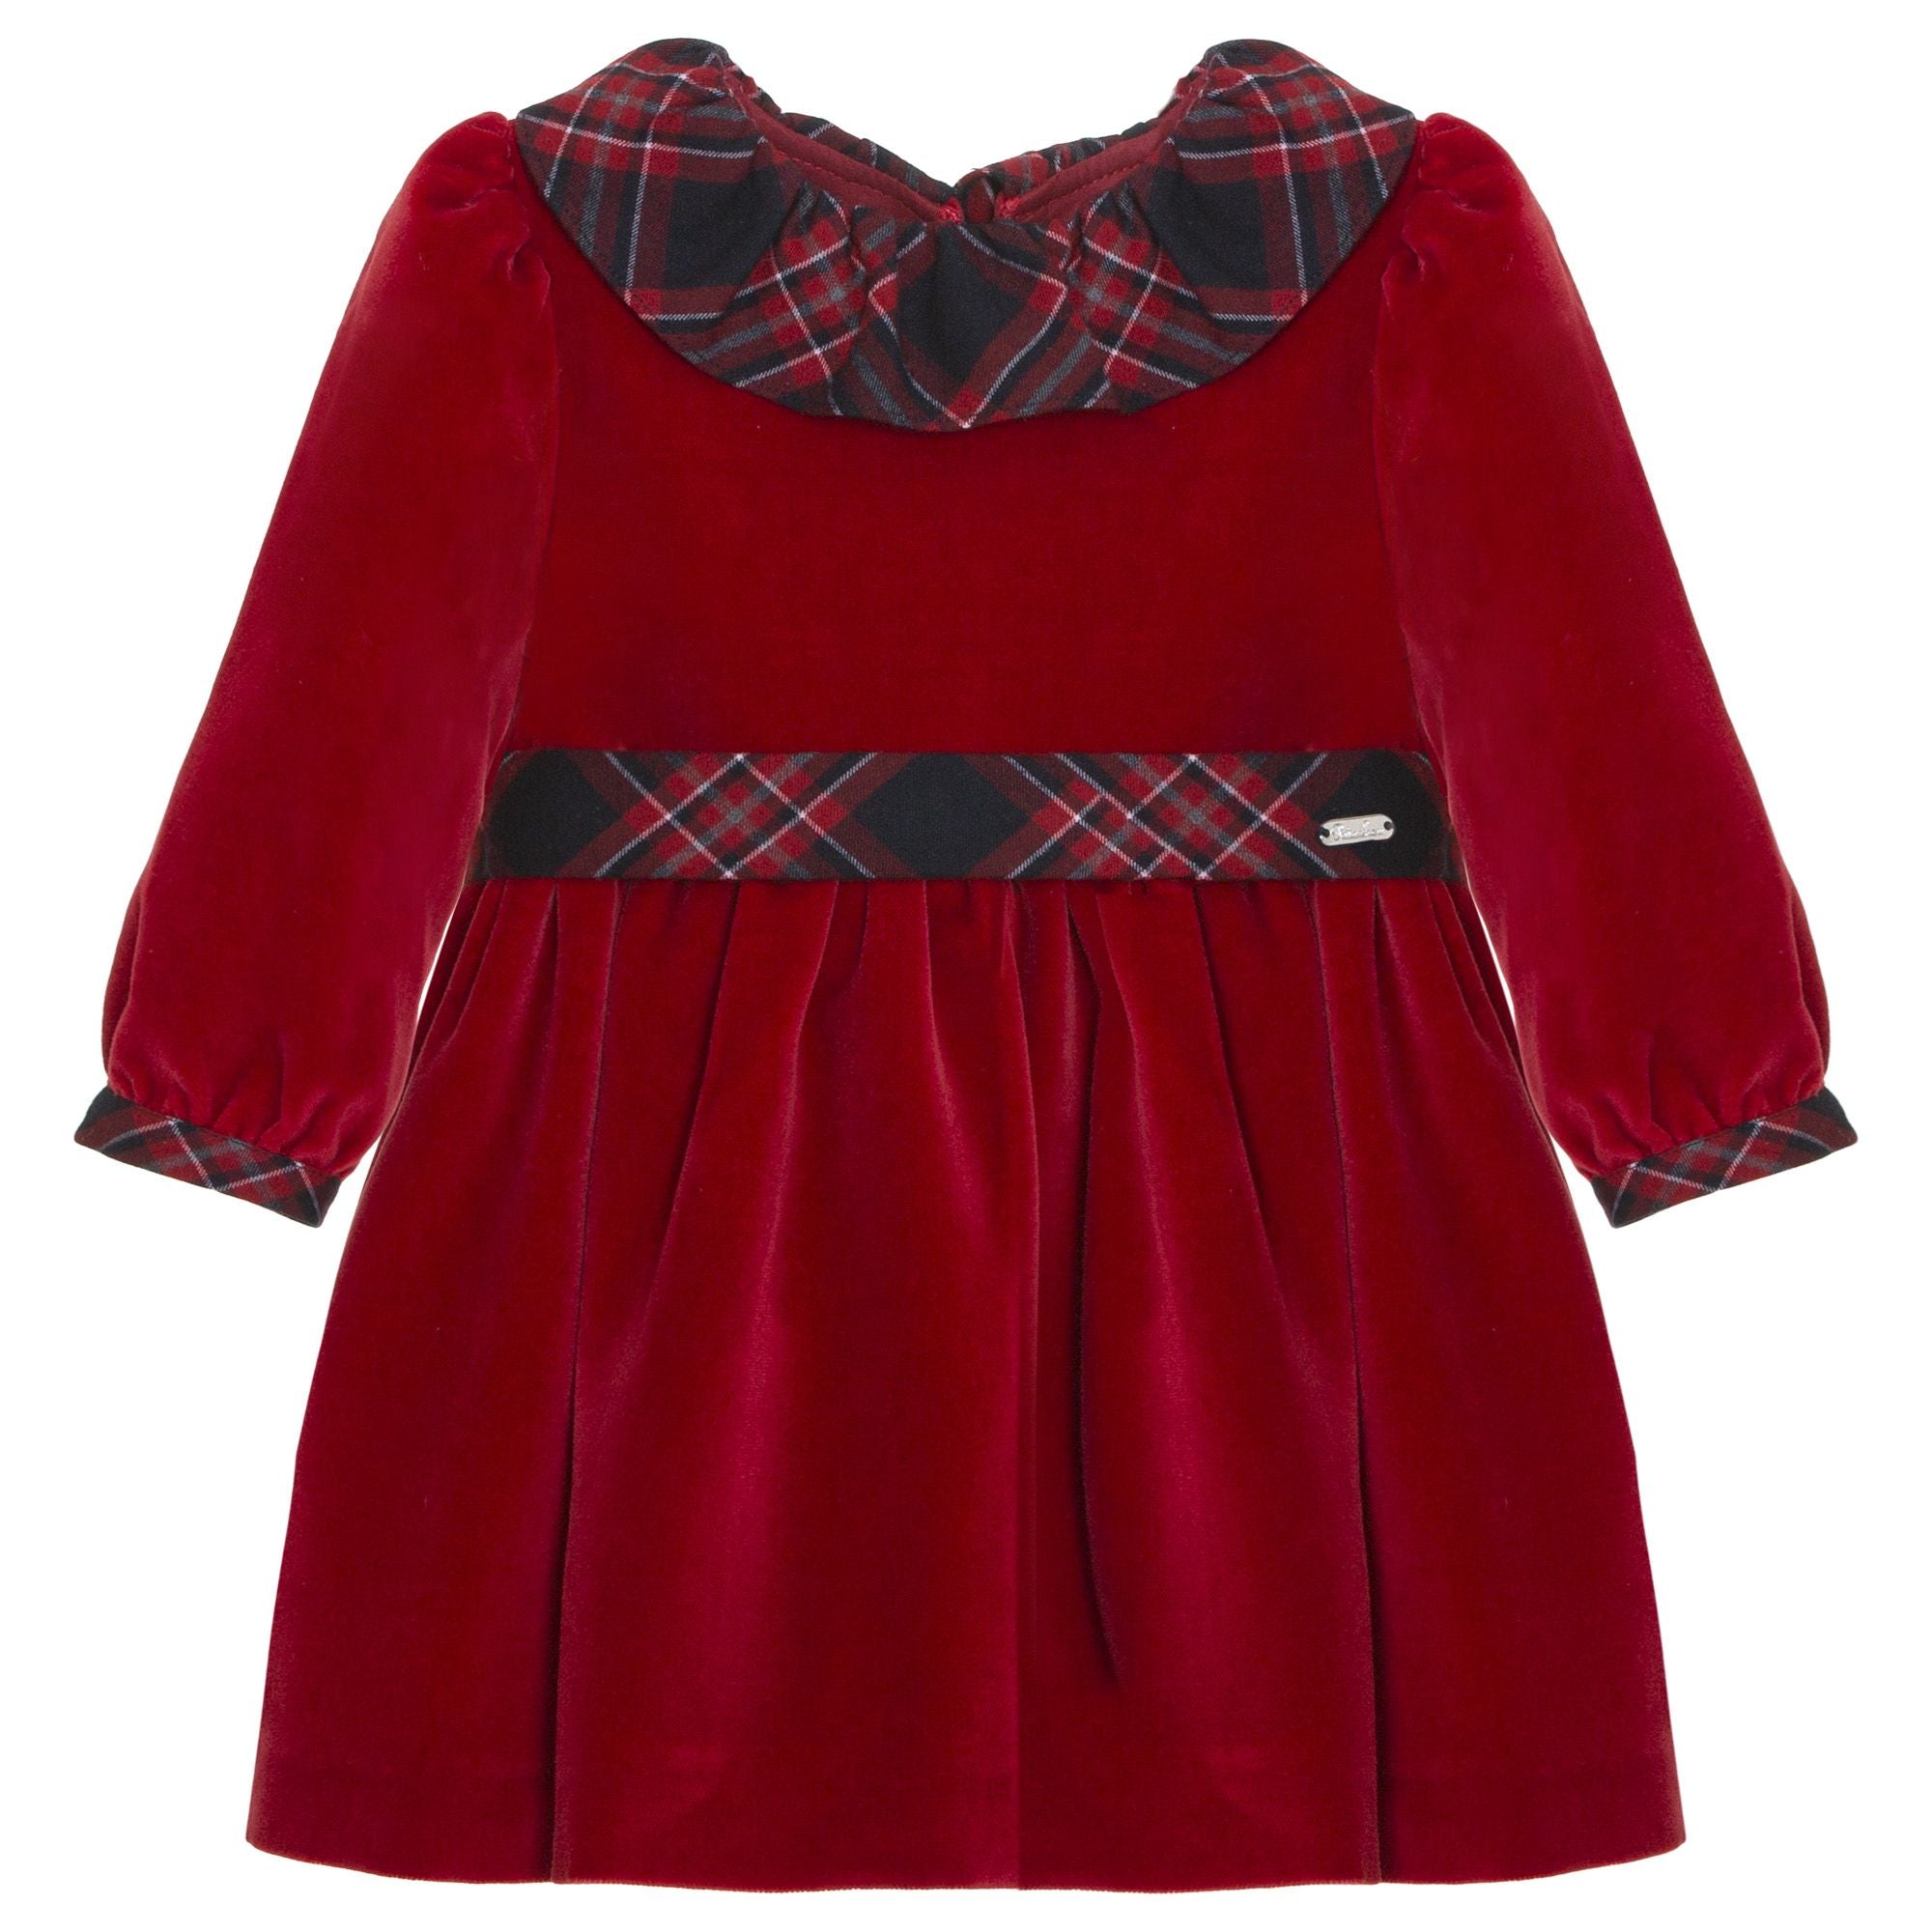 Patachou Red Velvet Dress